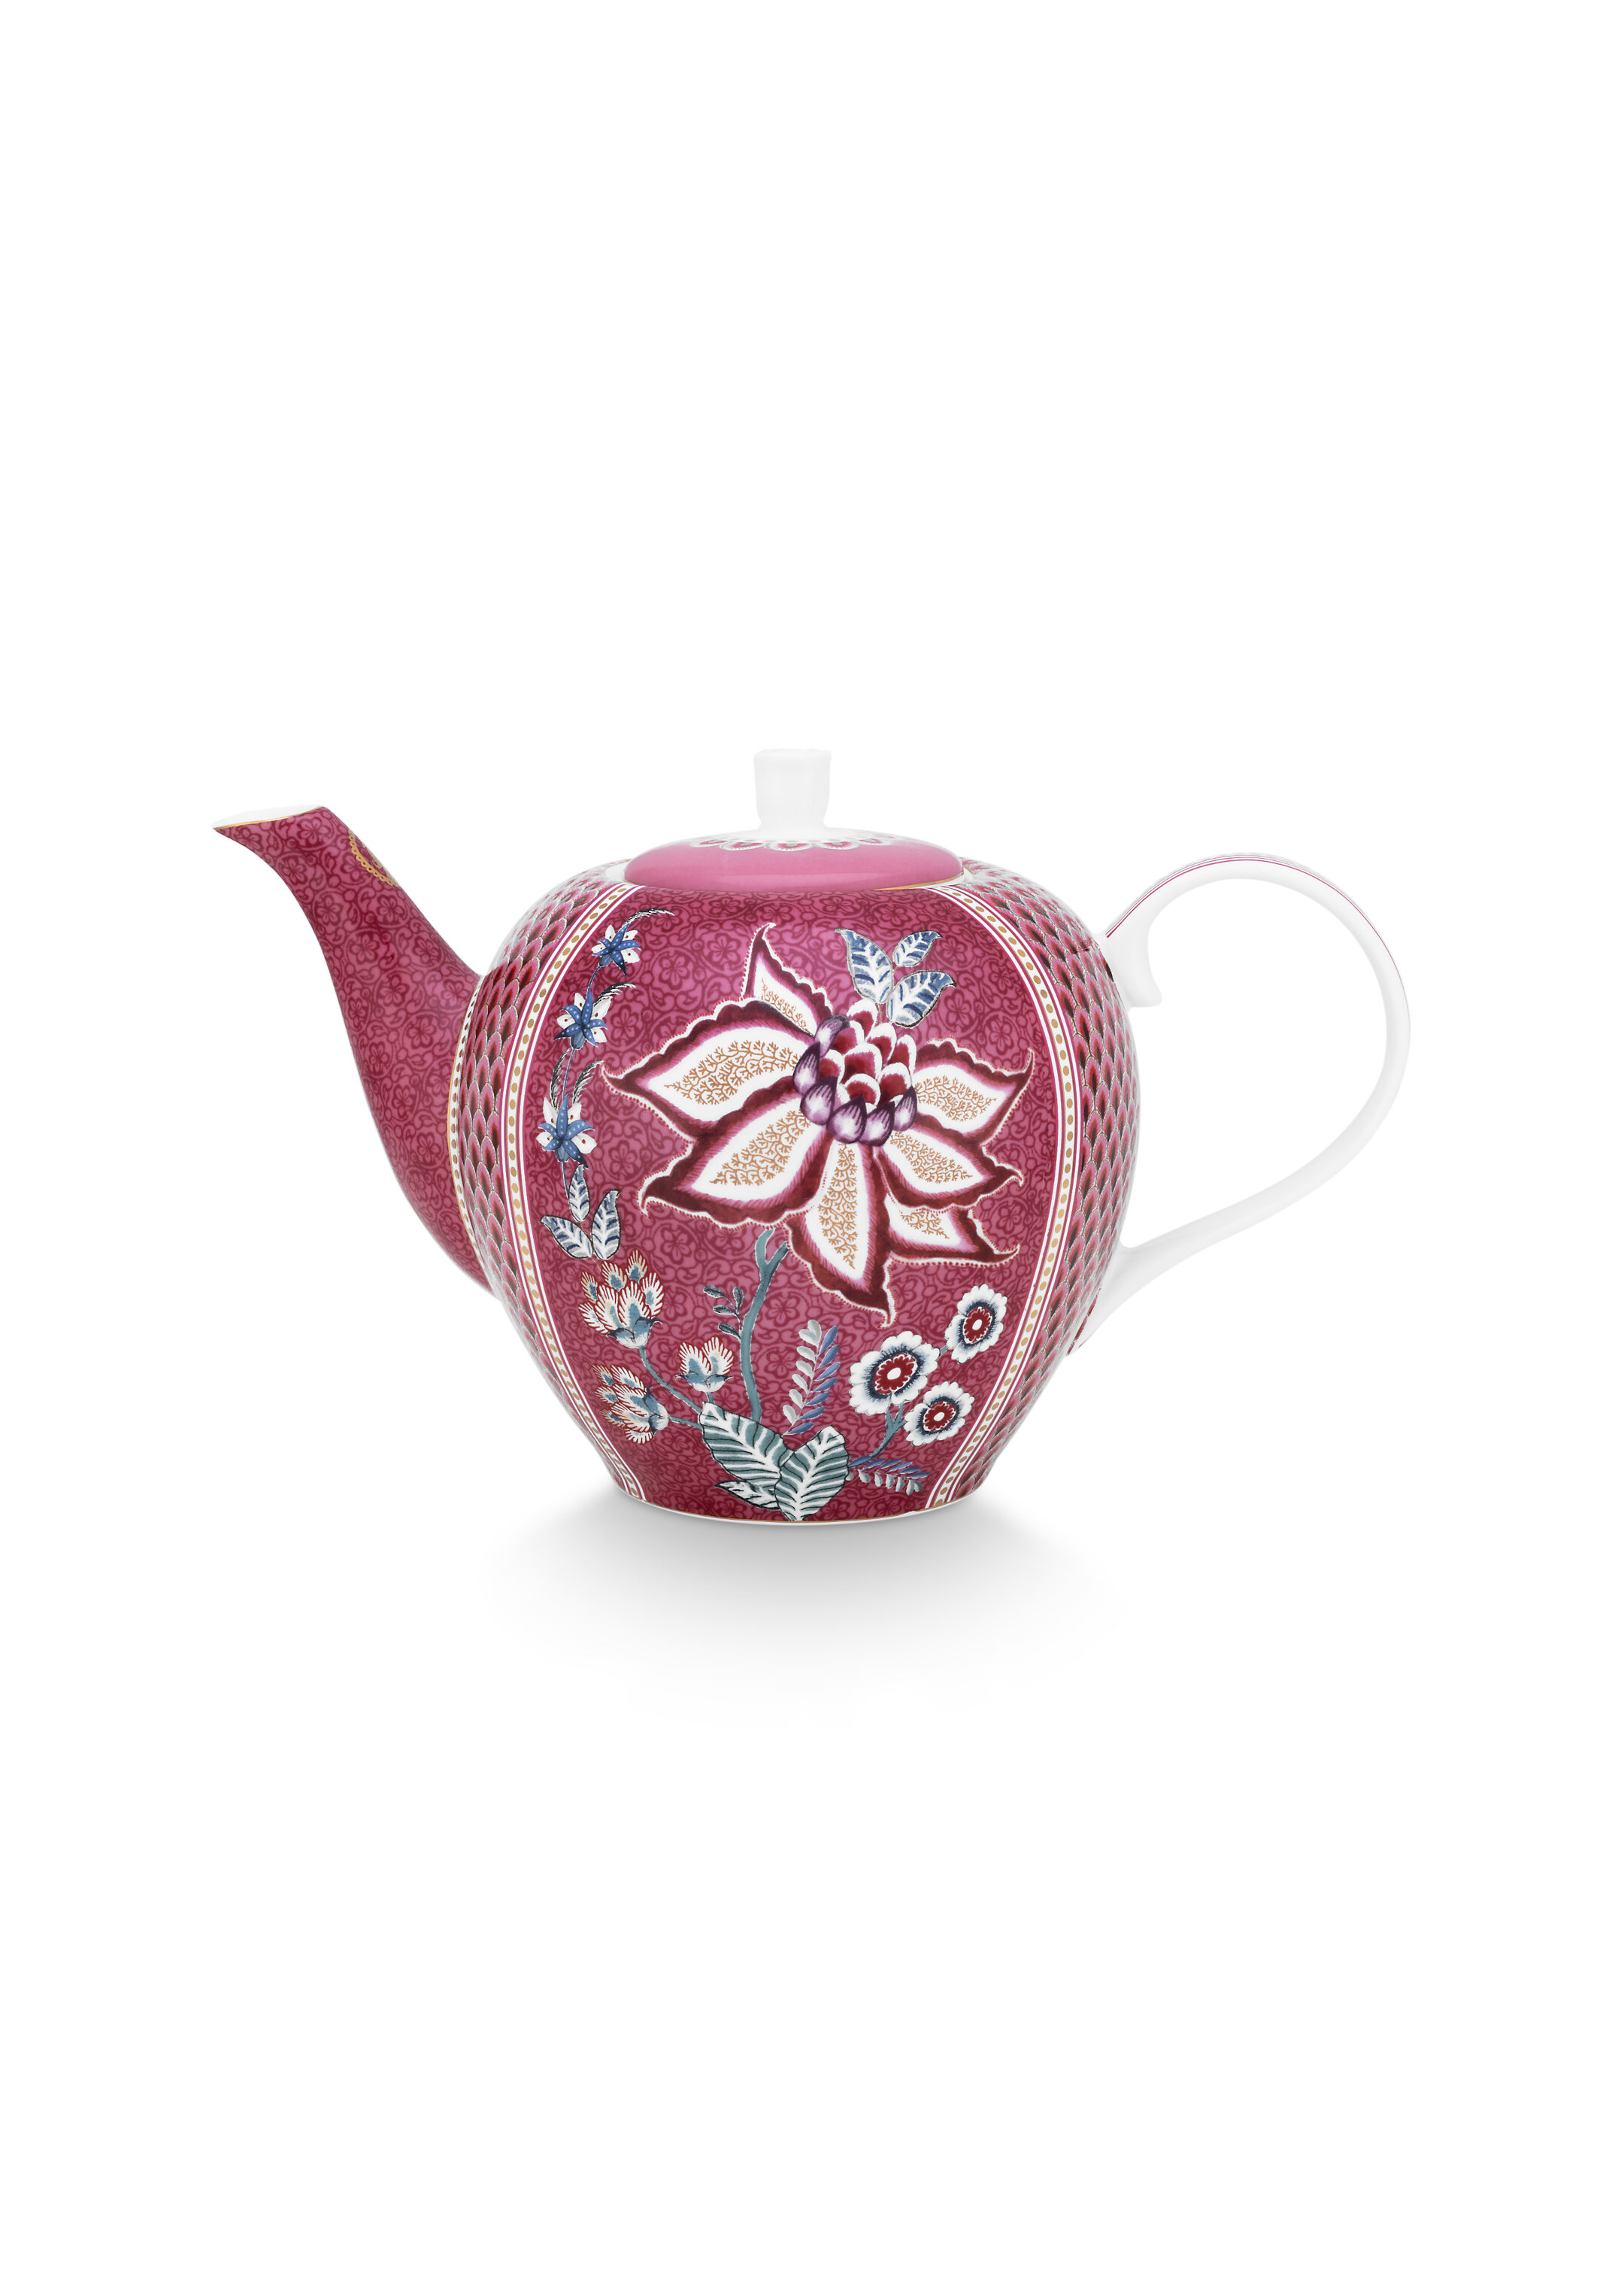 Tea Pot Large Flower Festival Dark Pink 1.6ltr Gift